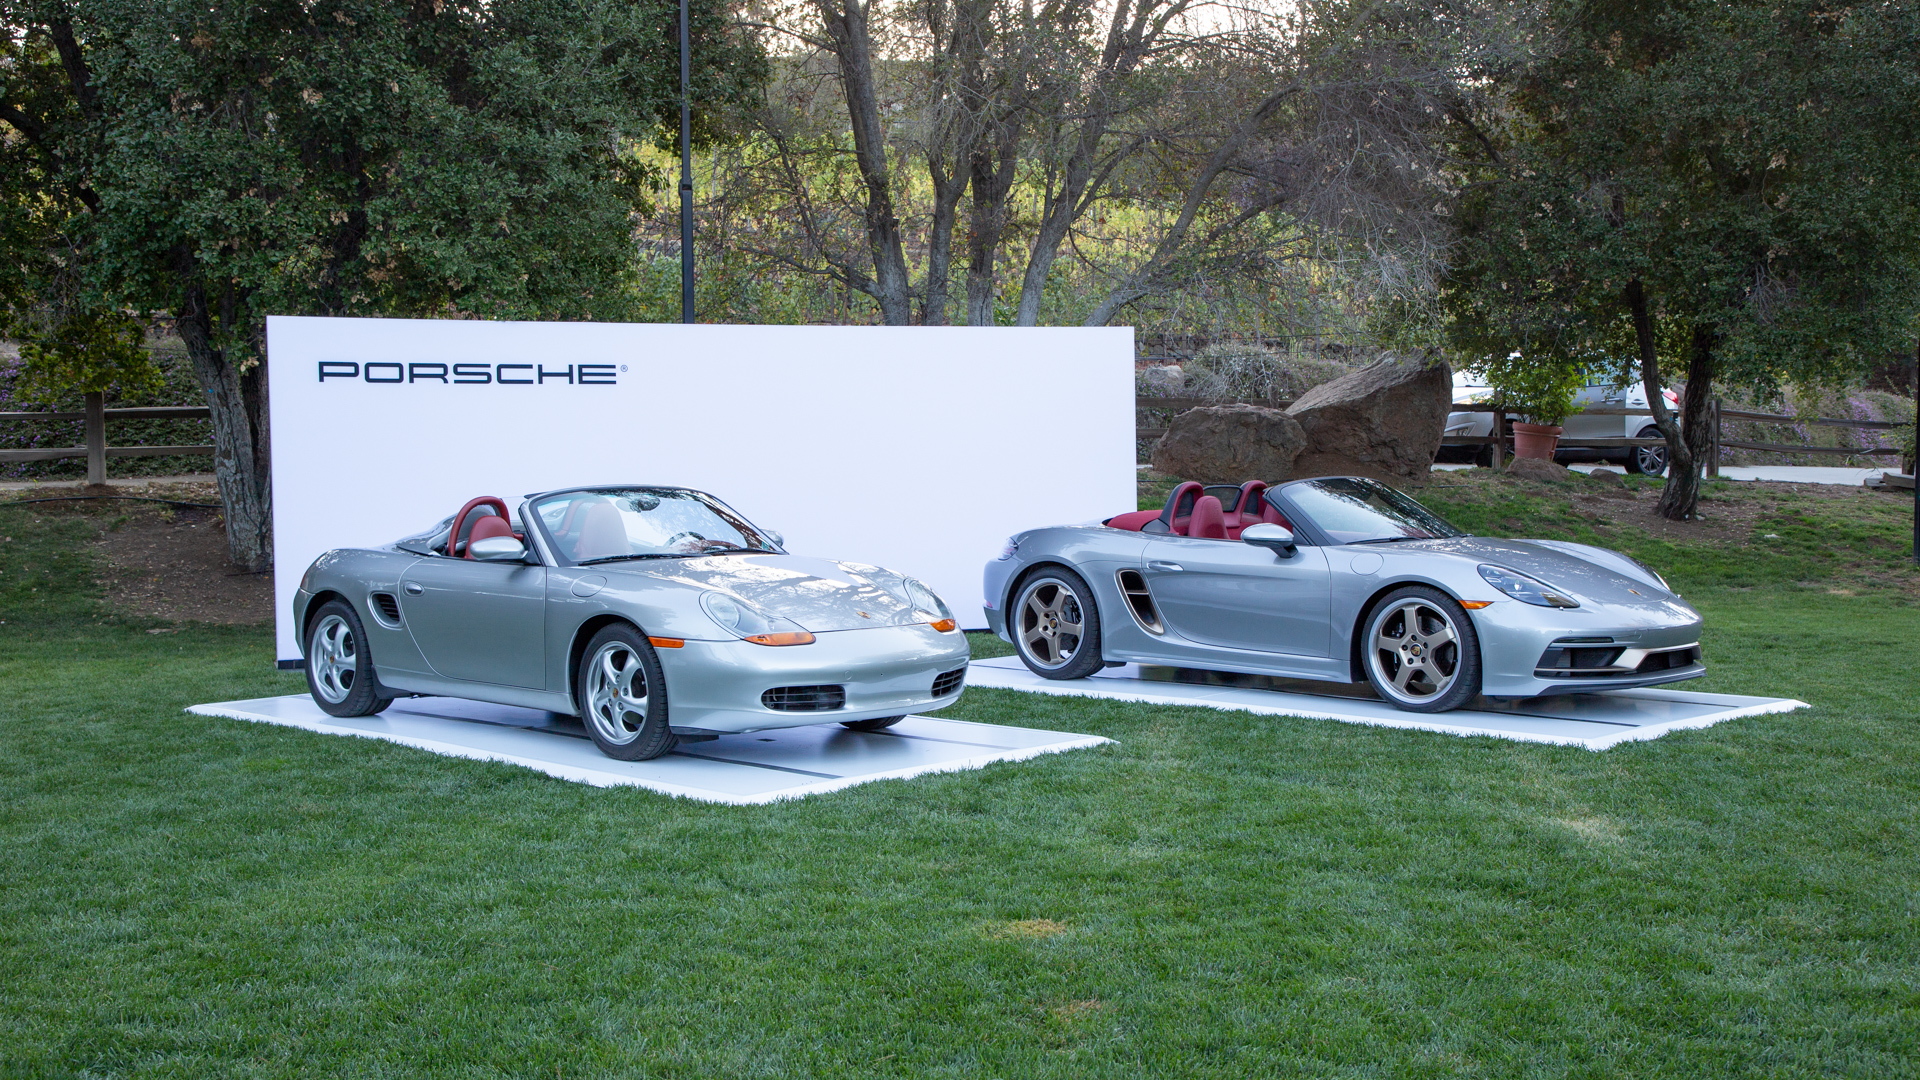 1997 Porsche Boxster and 2021 Porsche 718 Boxster